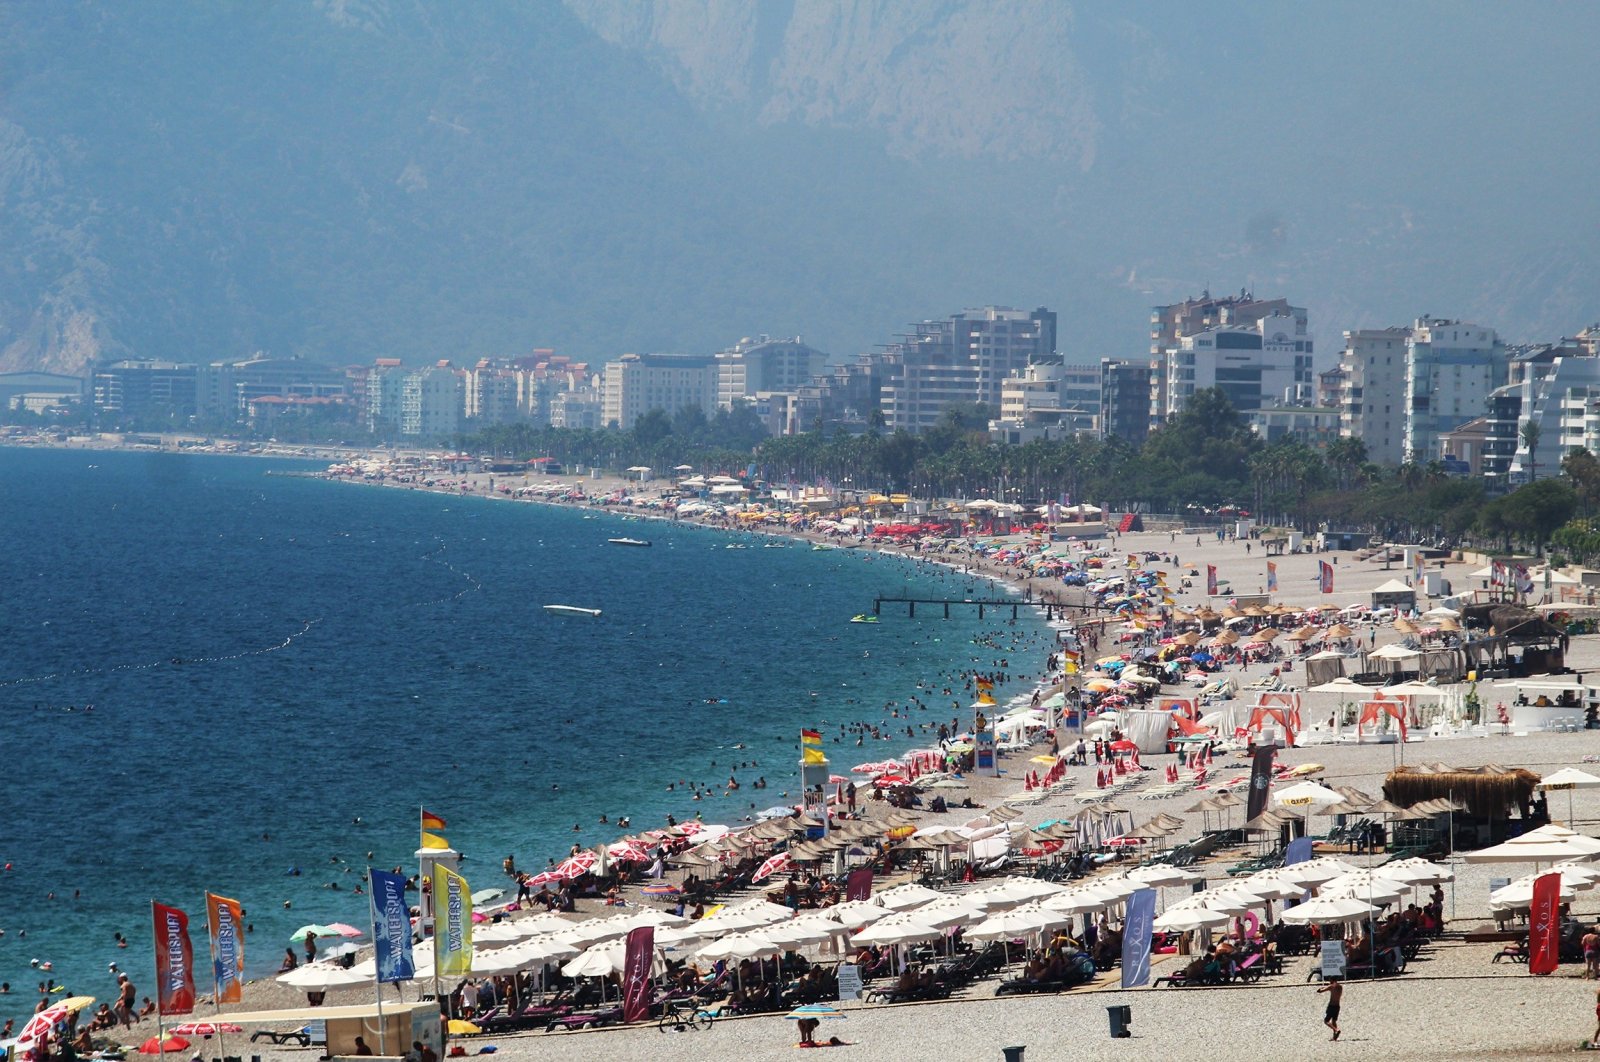 People in Antalya’s Konyaaltı beach, Aug. 29, 2020. (IHA Photo)